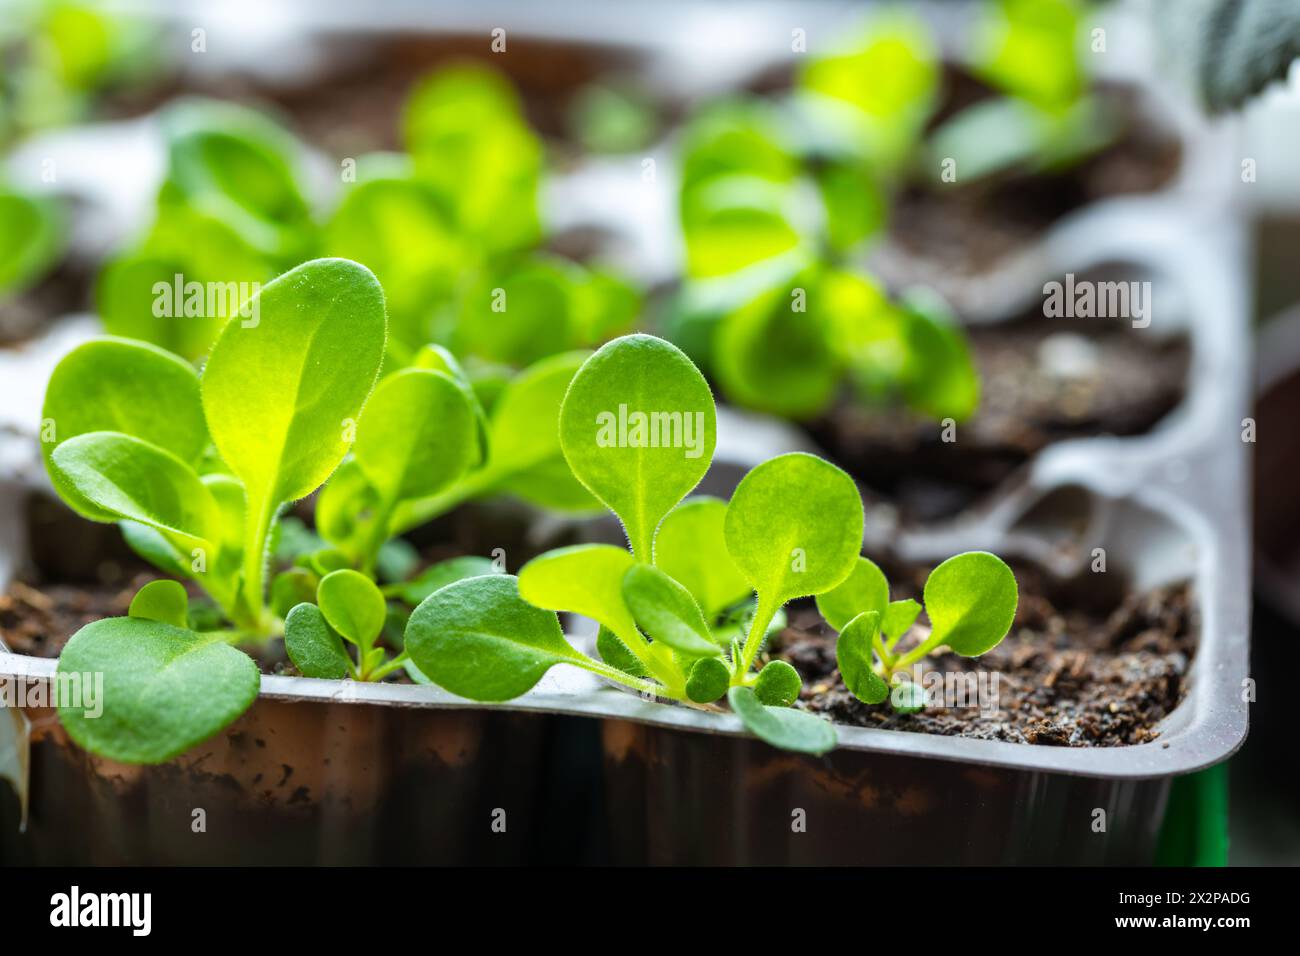 Le piantine verdi sono in vaso di plastica, foto ravvicinata. Agricoltura interna Foto Stock